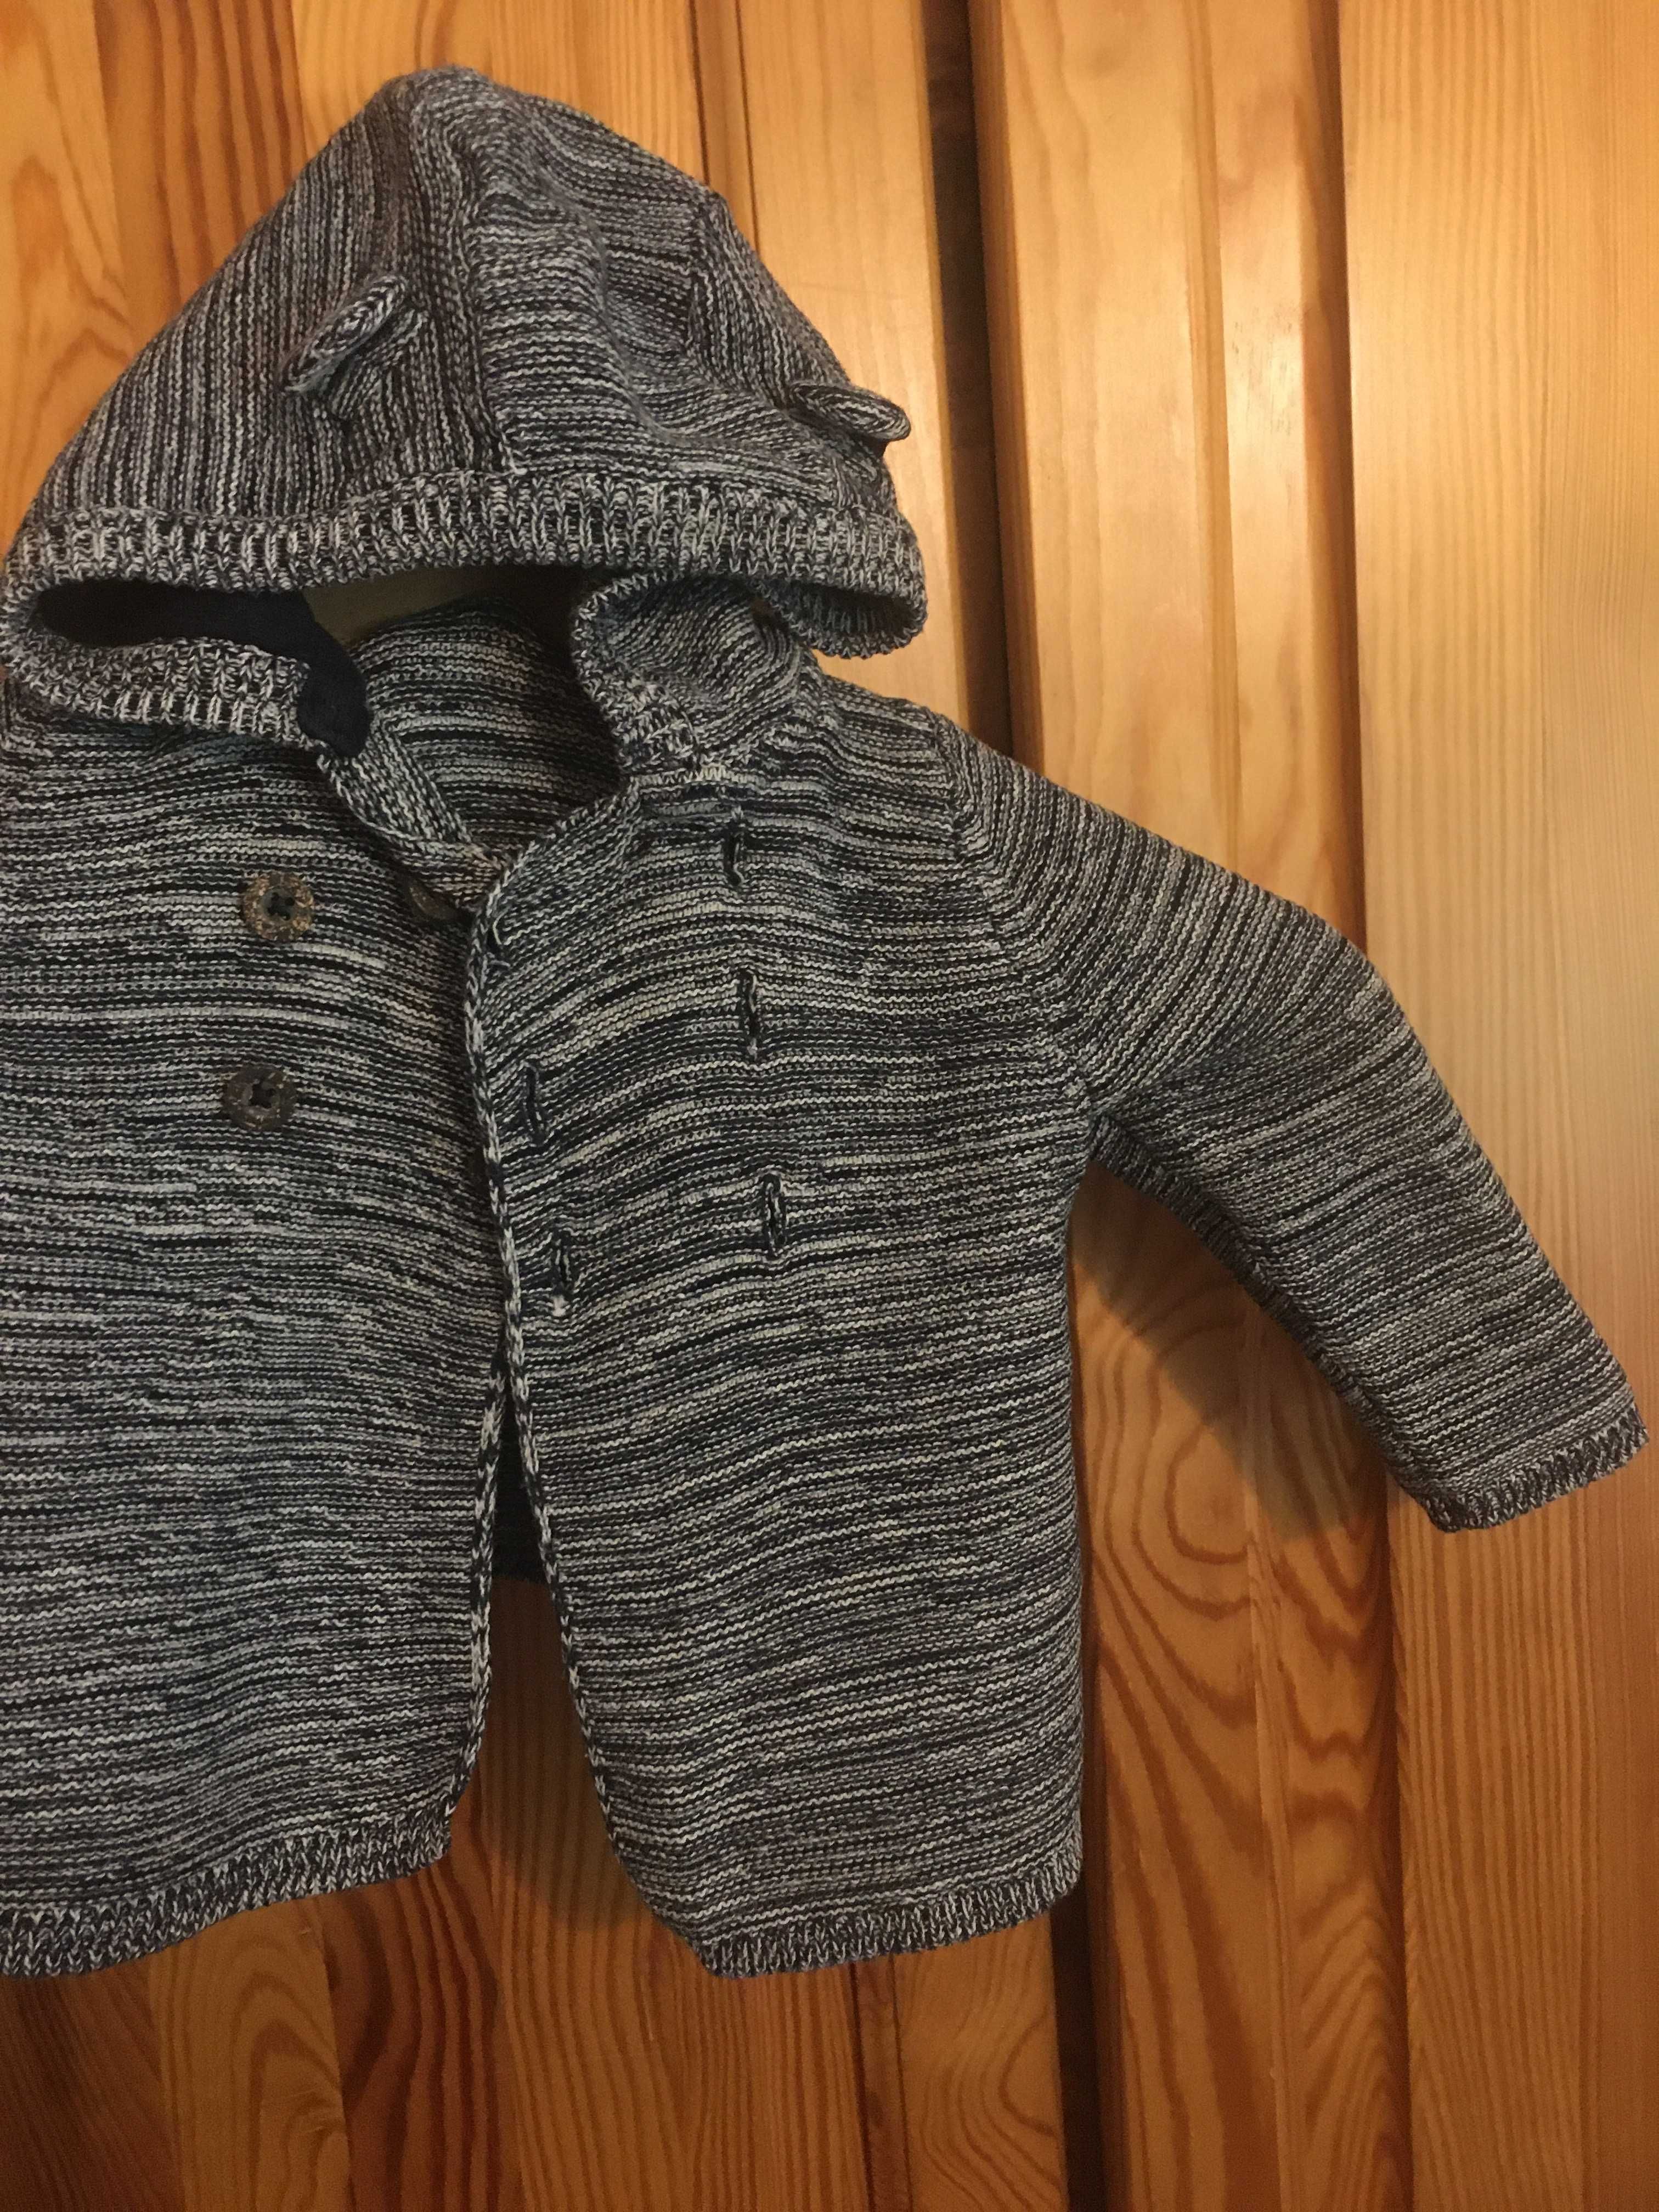 Szary sweterek chłopięcy sweter dla chłopca szary melanż 62/68 2-6m